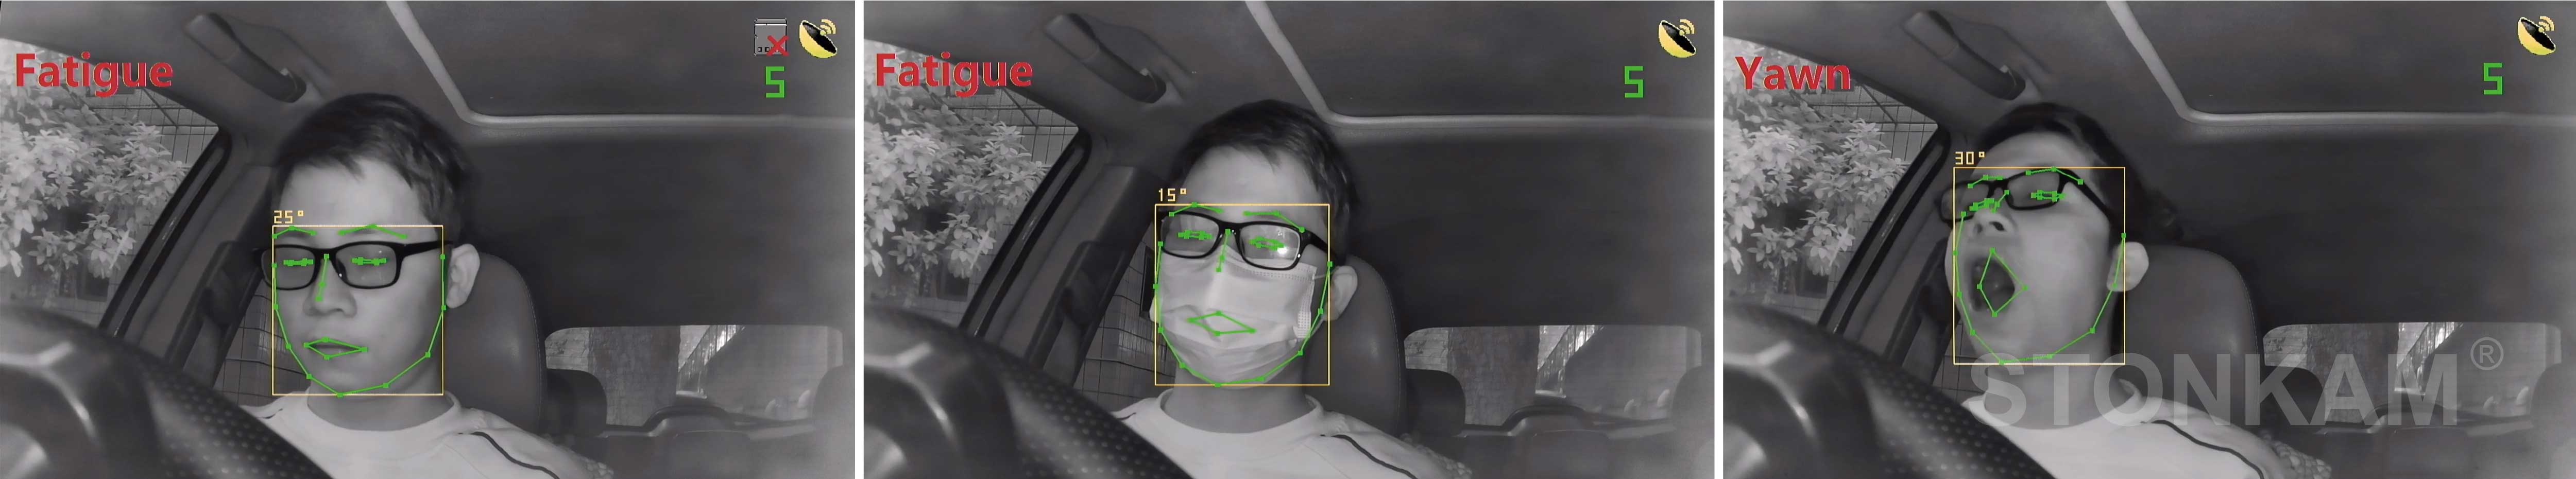 driver monitoring camera